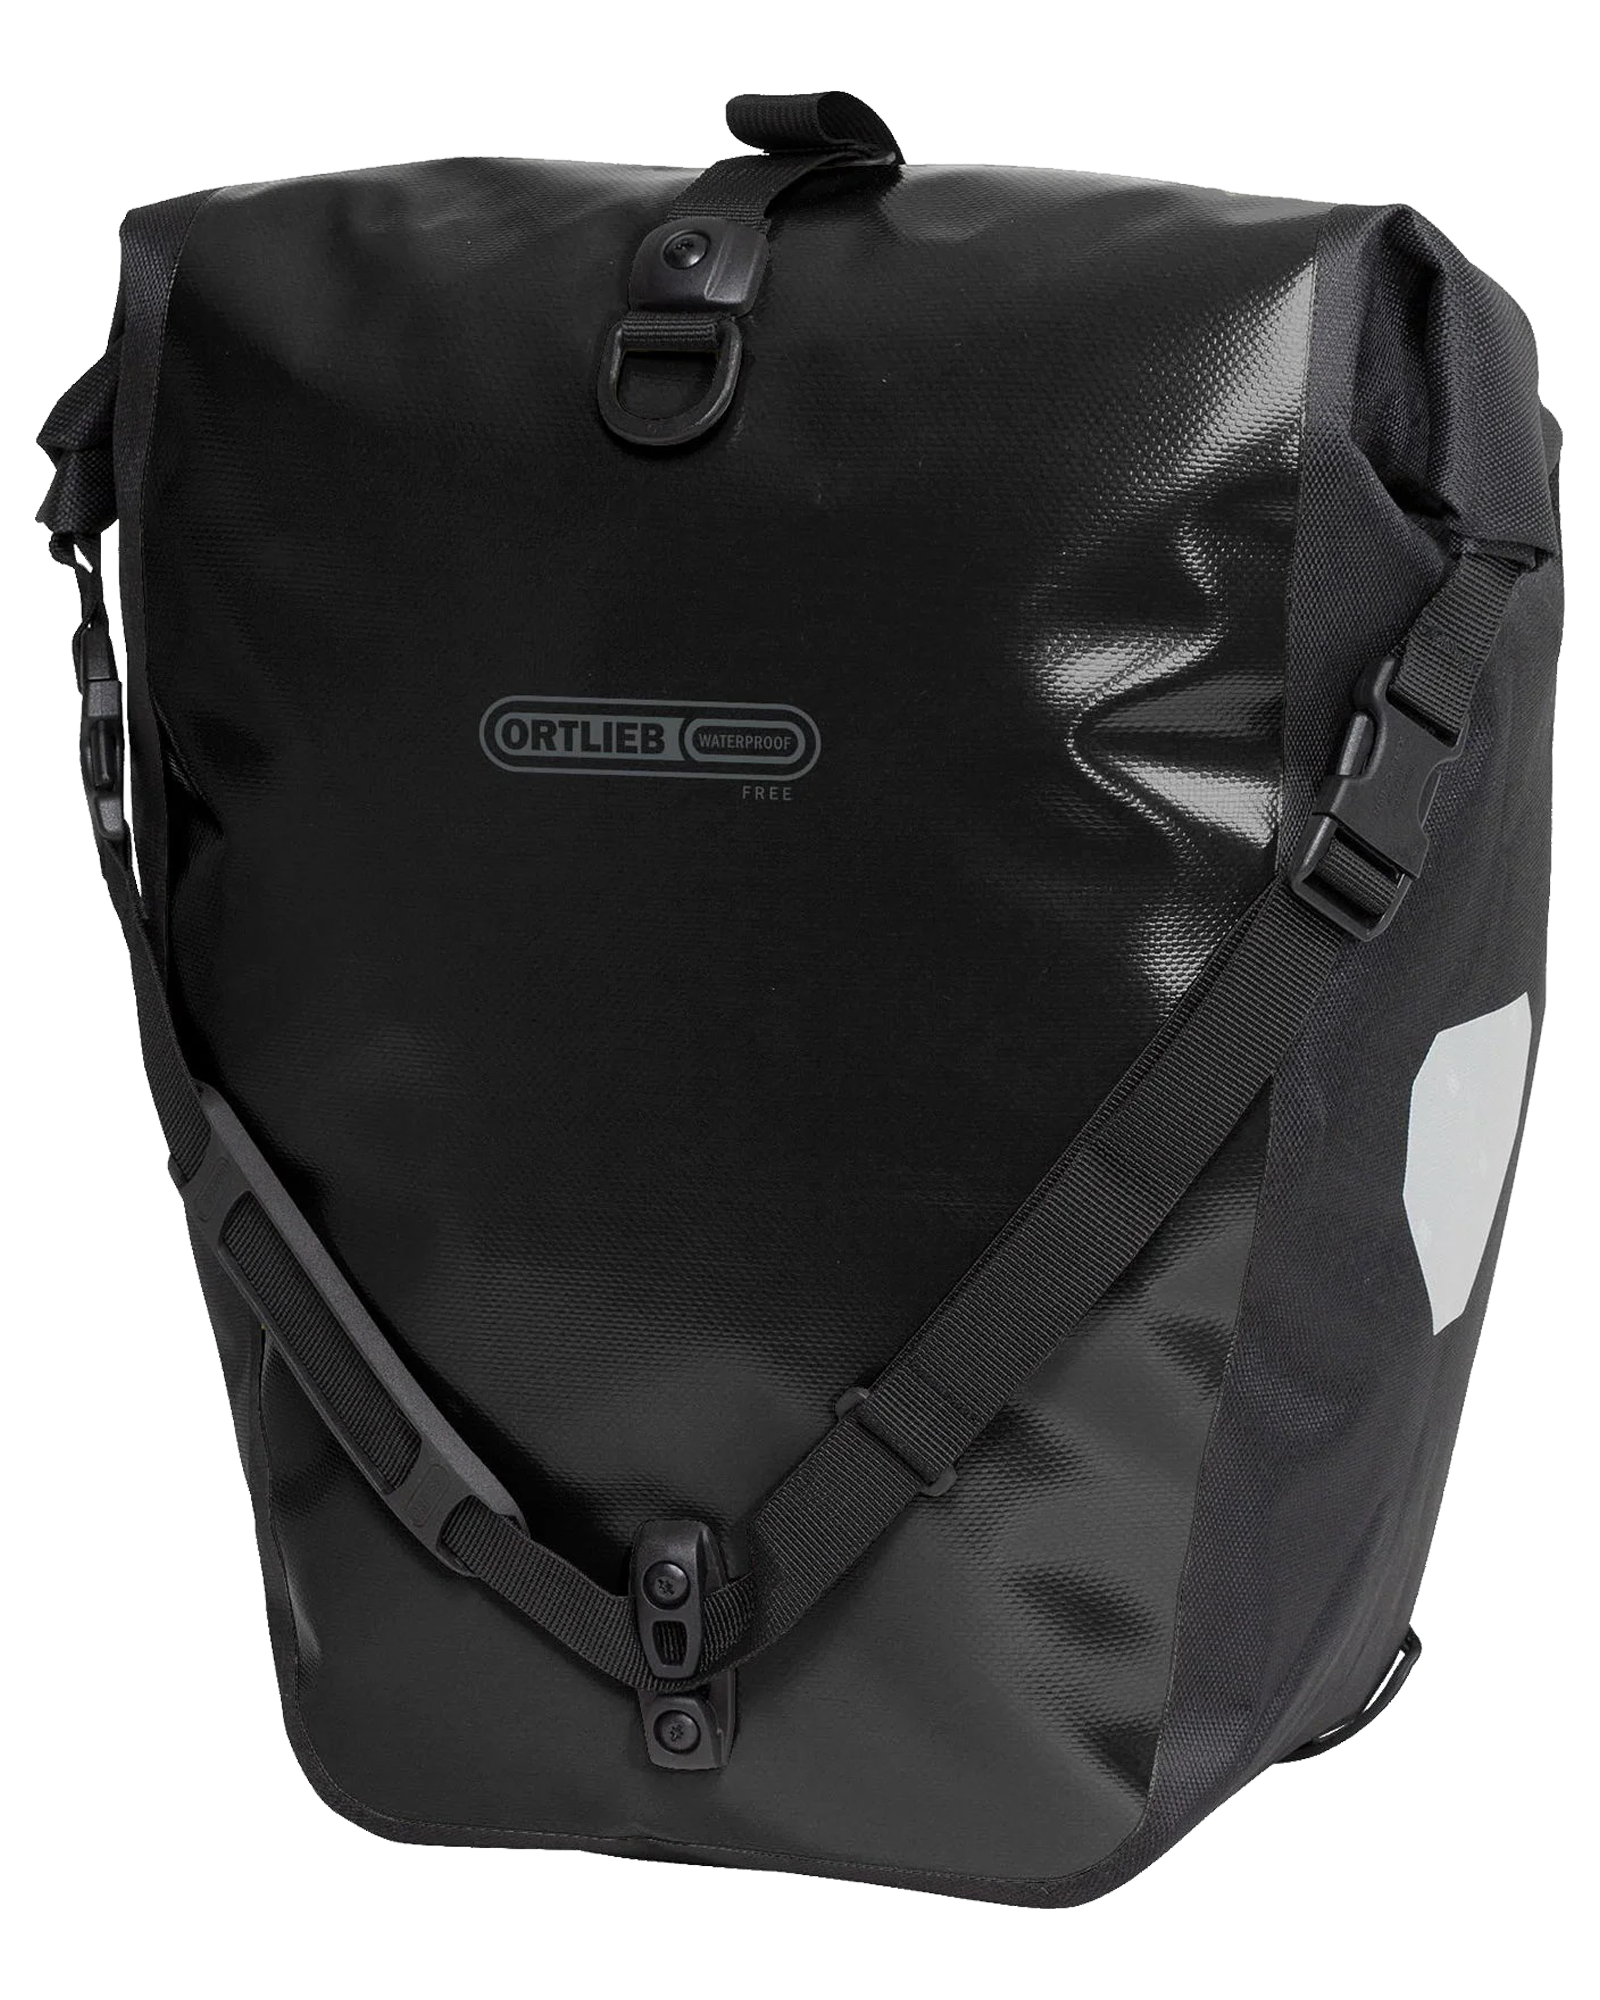 Ortlieb Back-Roller Free QL 3.1 Bike Bag